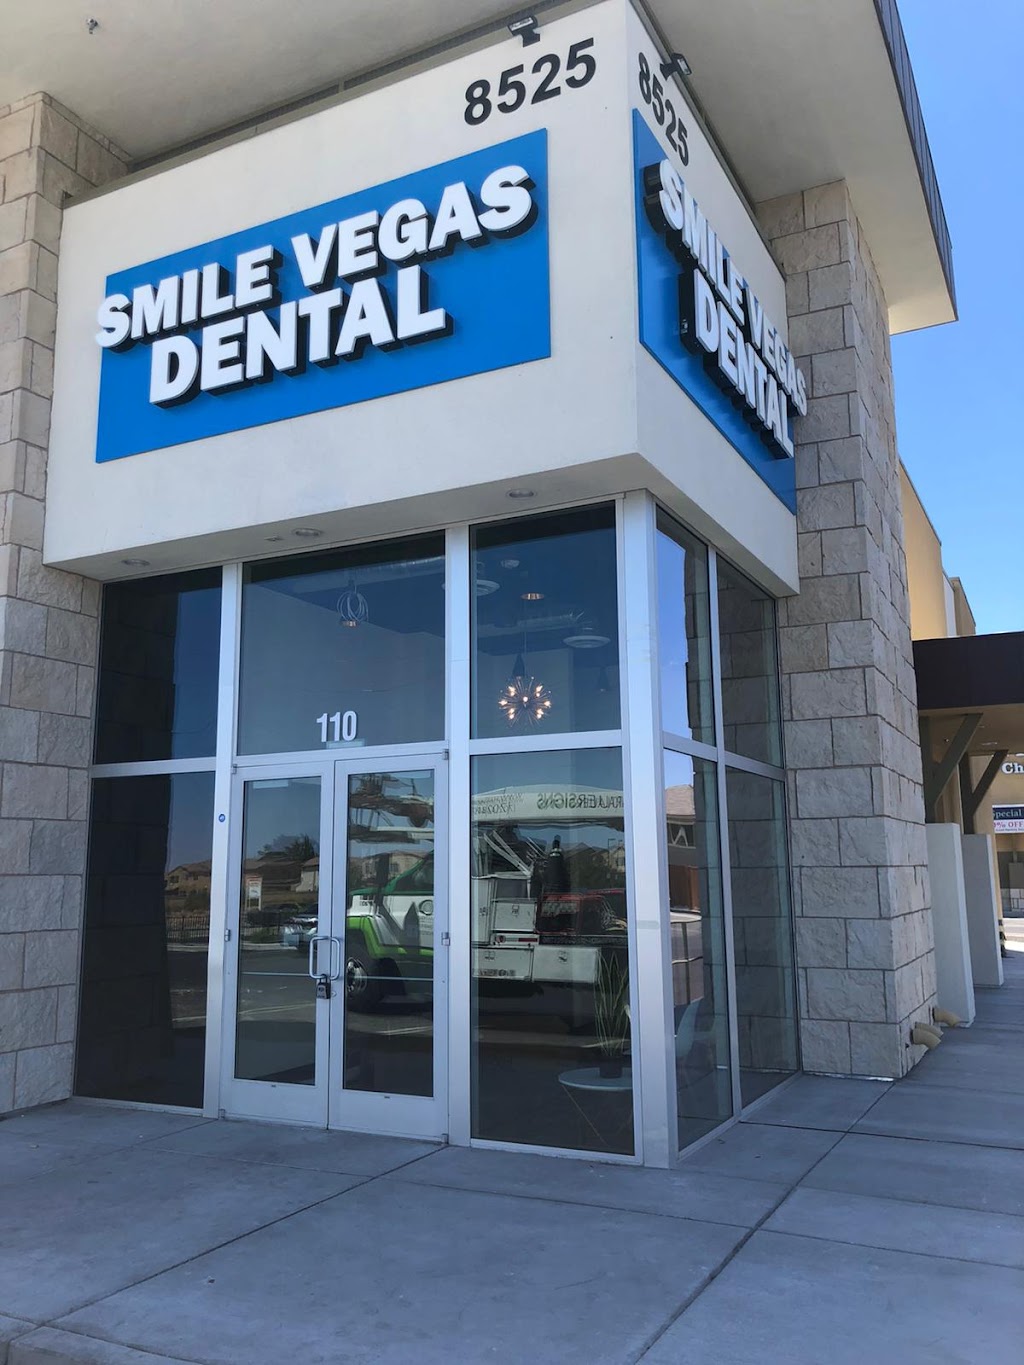 Smile Vegas Dental | 8525 Blue Diamond Rd Suite Ste 110, Las Vegas, NV 89178, USA | Phone: (702) 660-2646